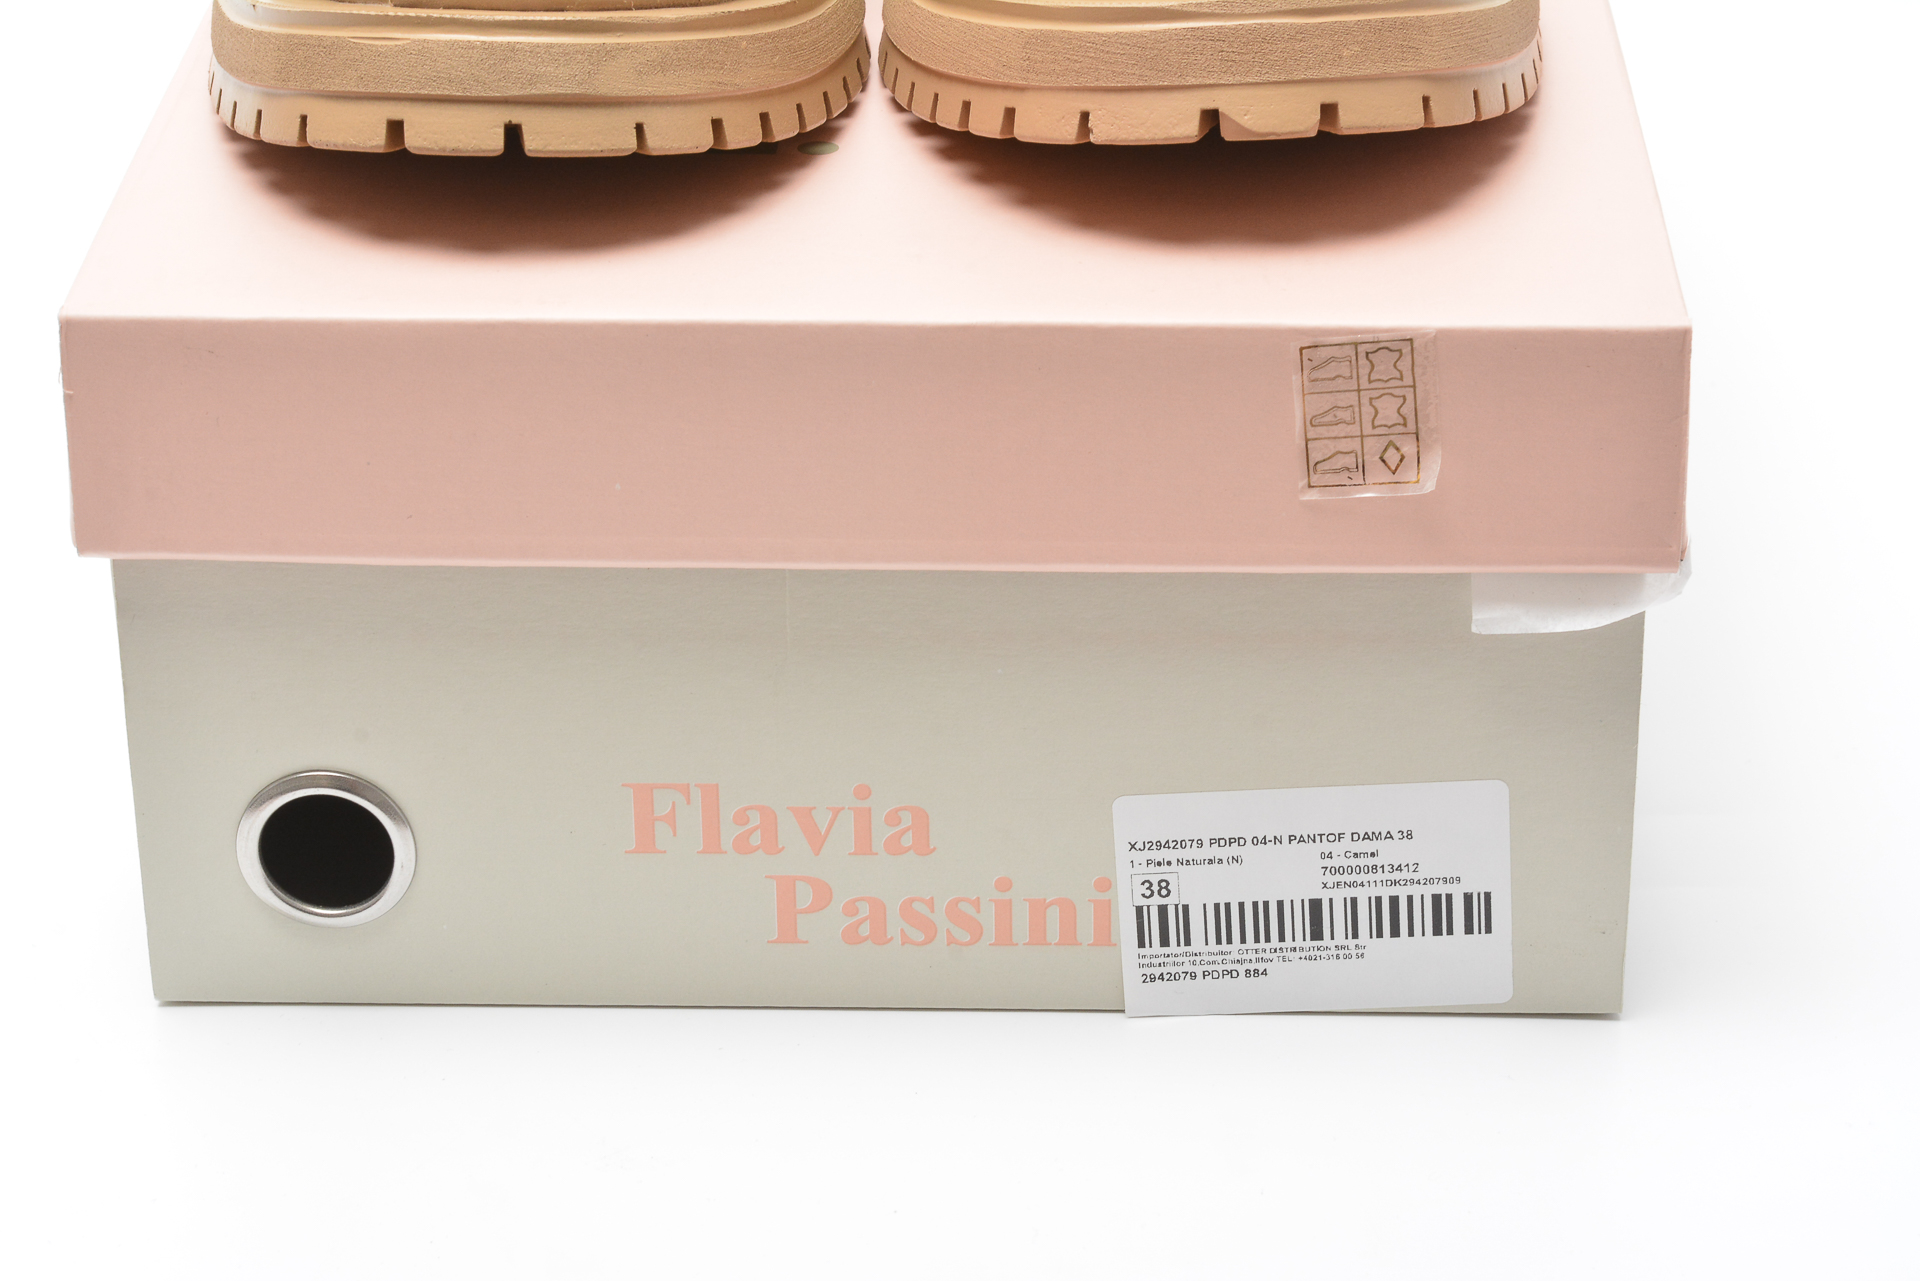 Pantofi FLAVIA PASSINI maro, 2942079, din piele naturala Flavia Passini